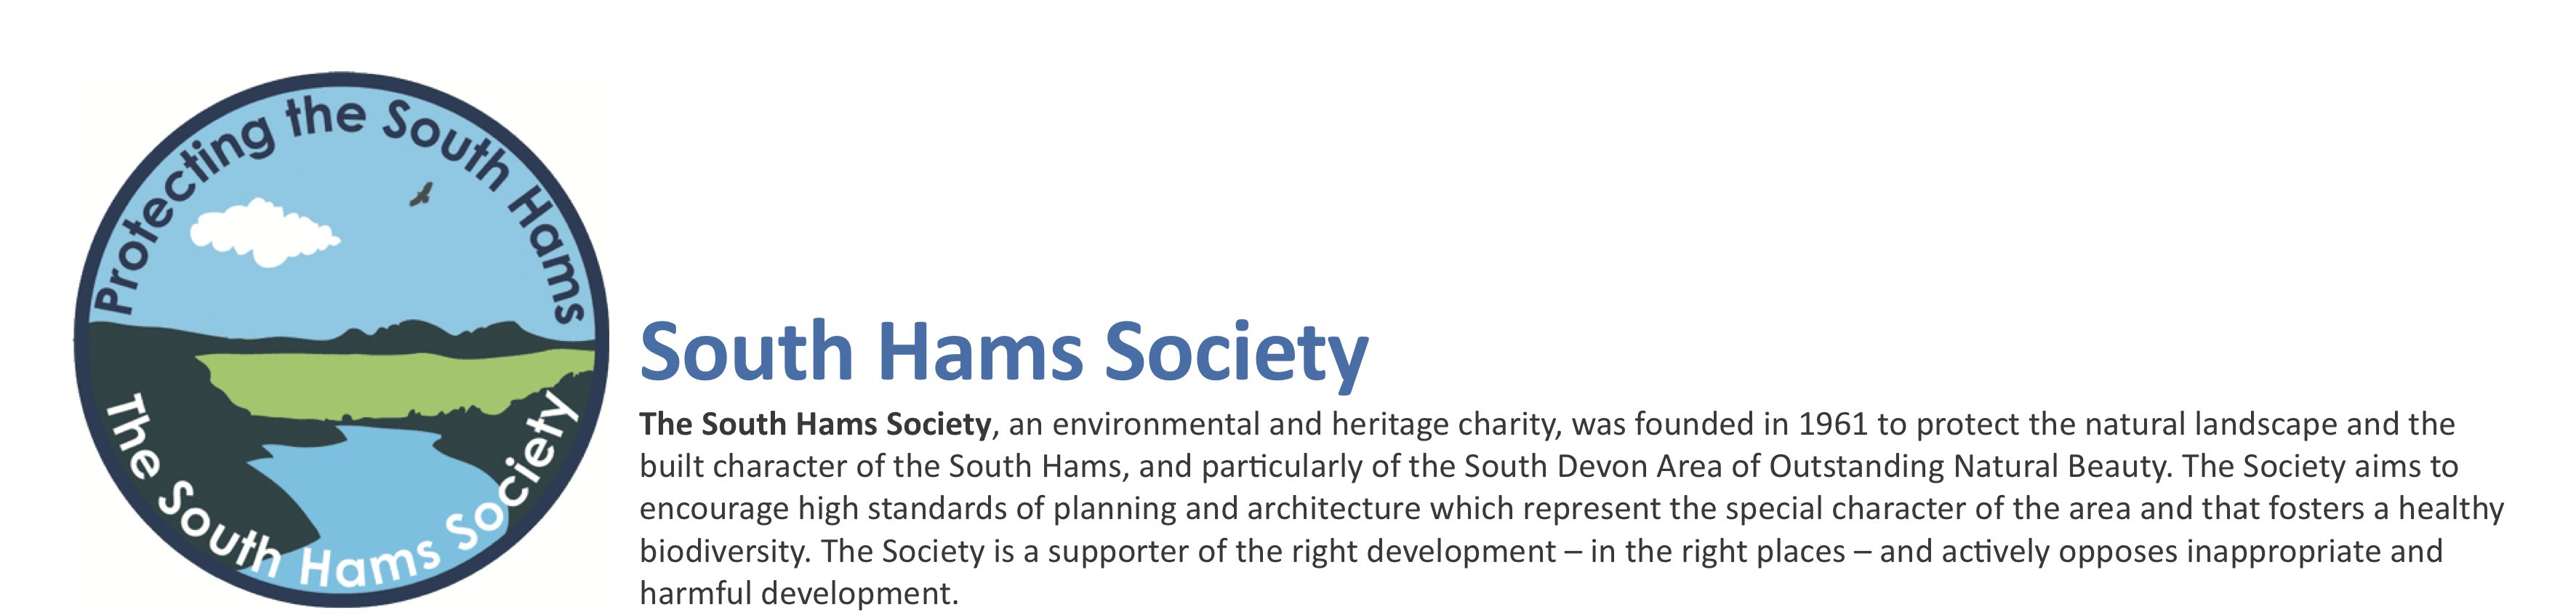 South Hams Society